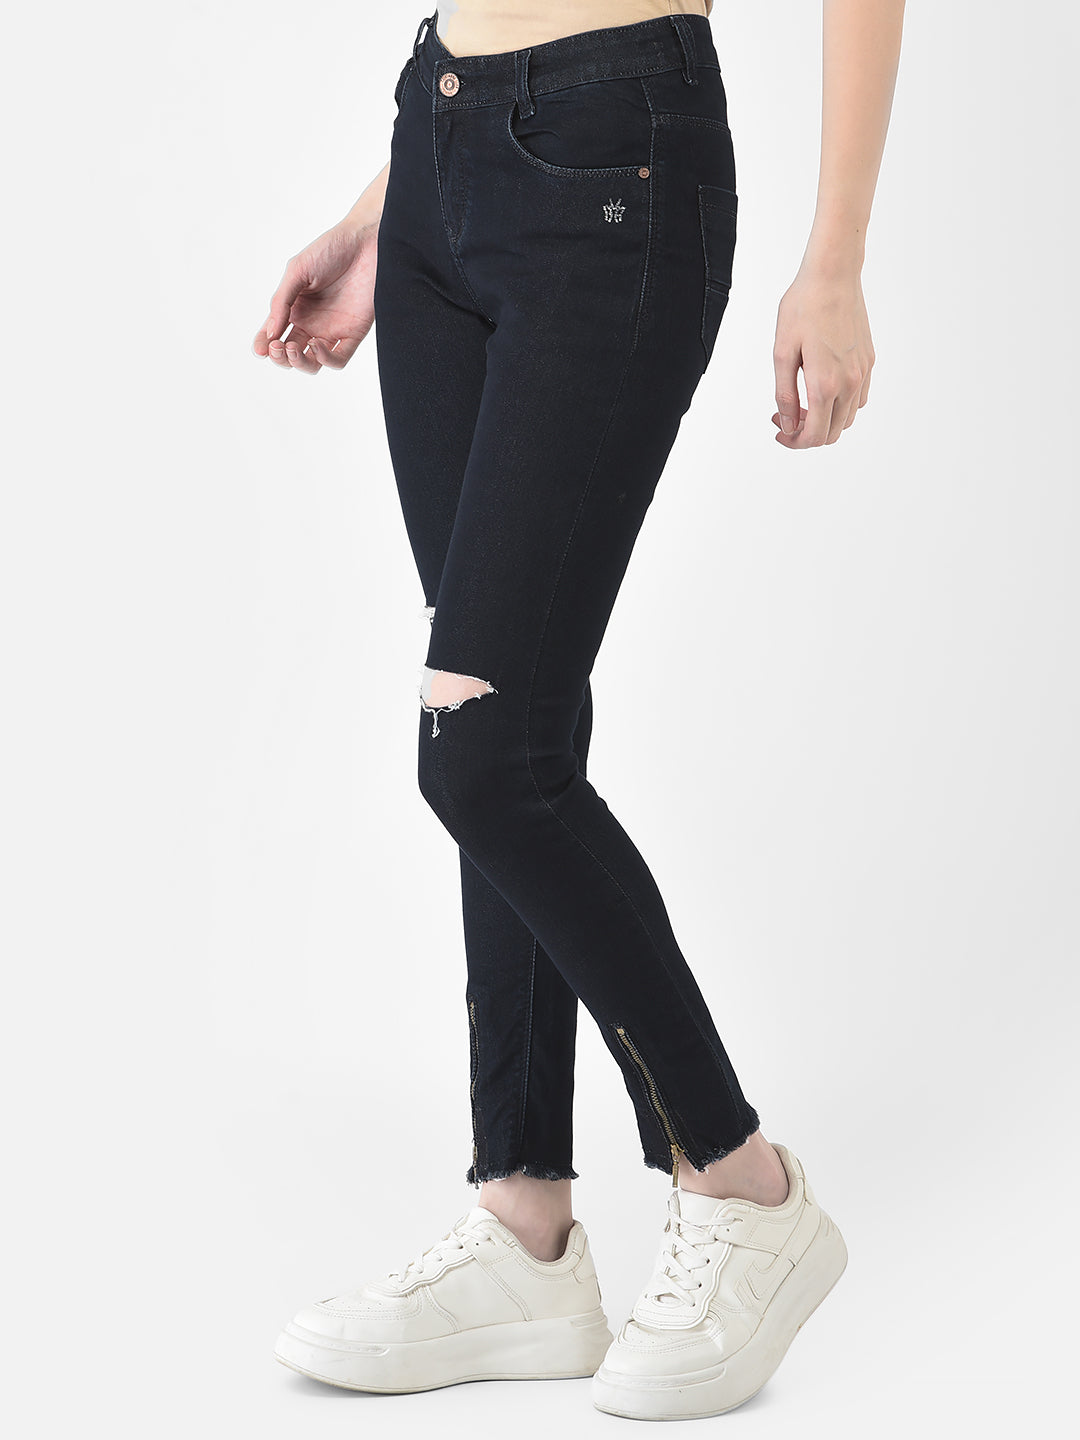 Navy Blue Slash Knee Jeans - Women Jeans